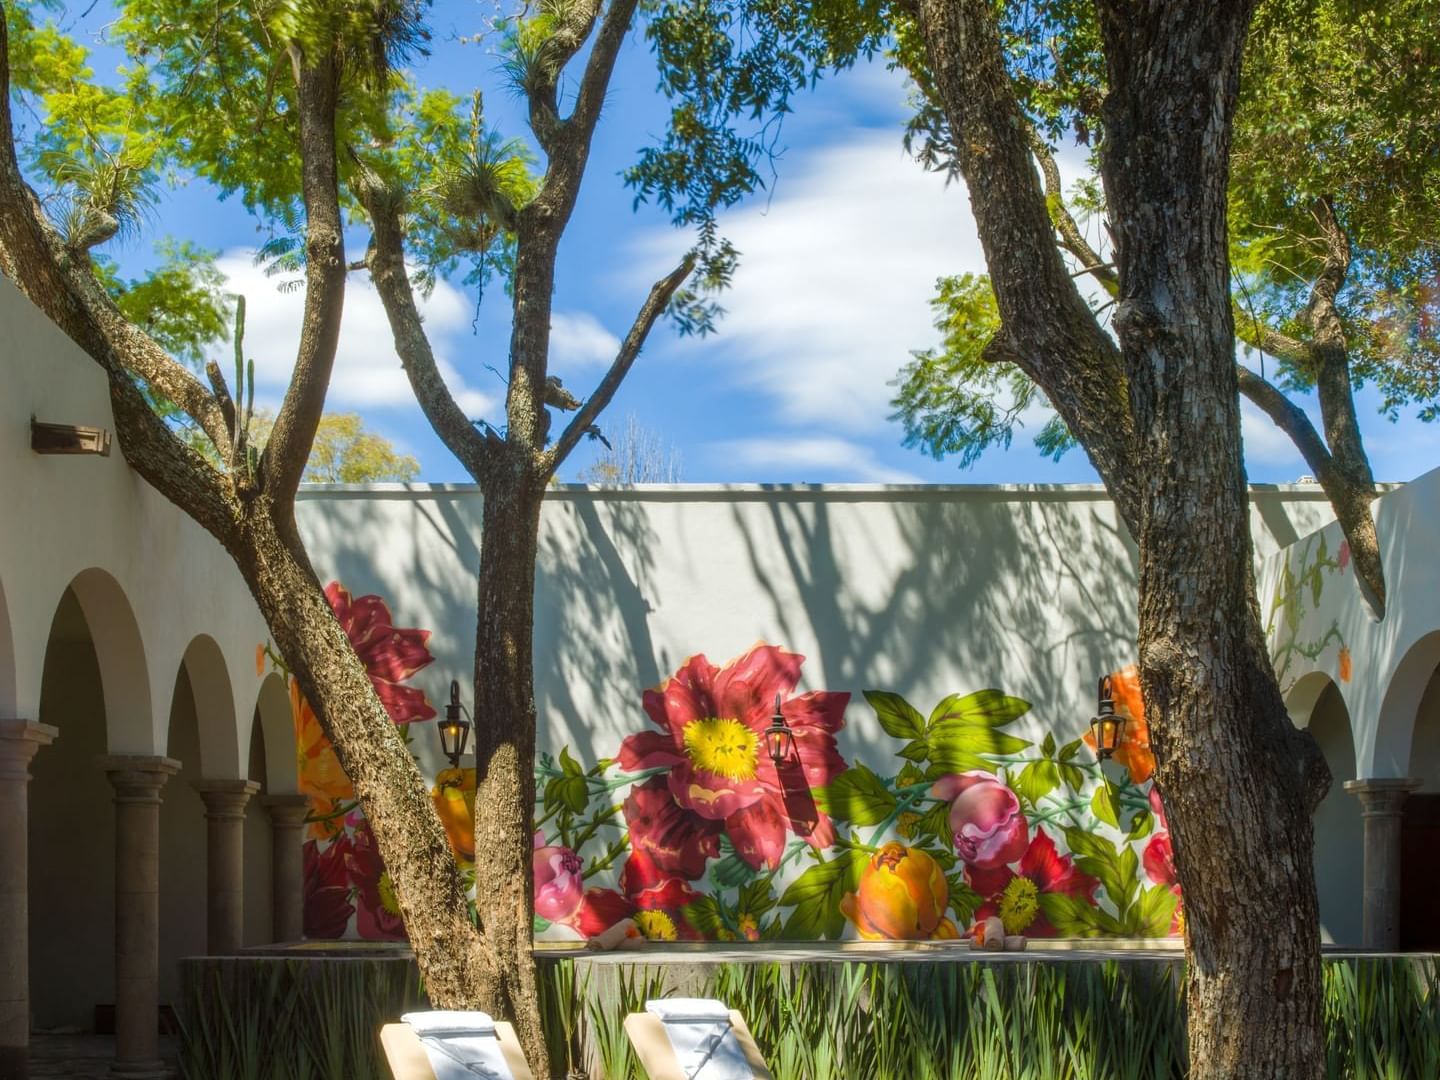 Outdoor wall with nice flower art, Solarium spa, La Colección